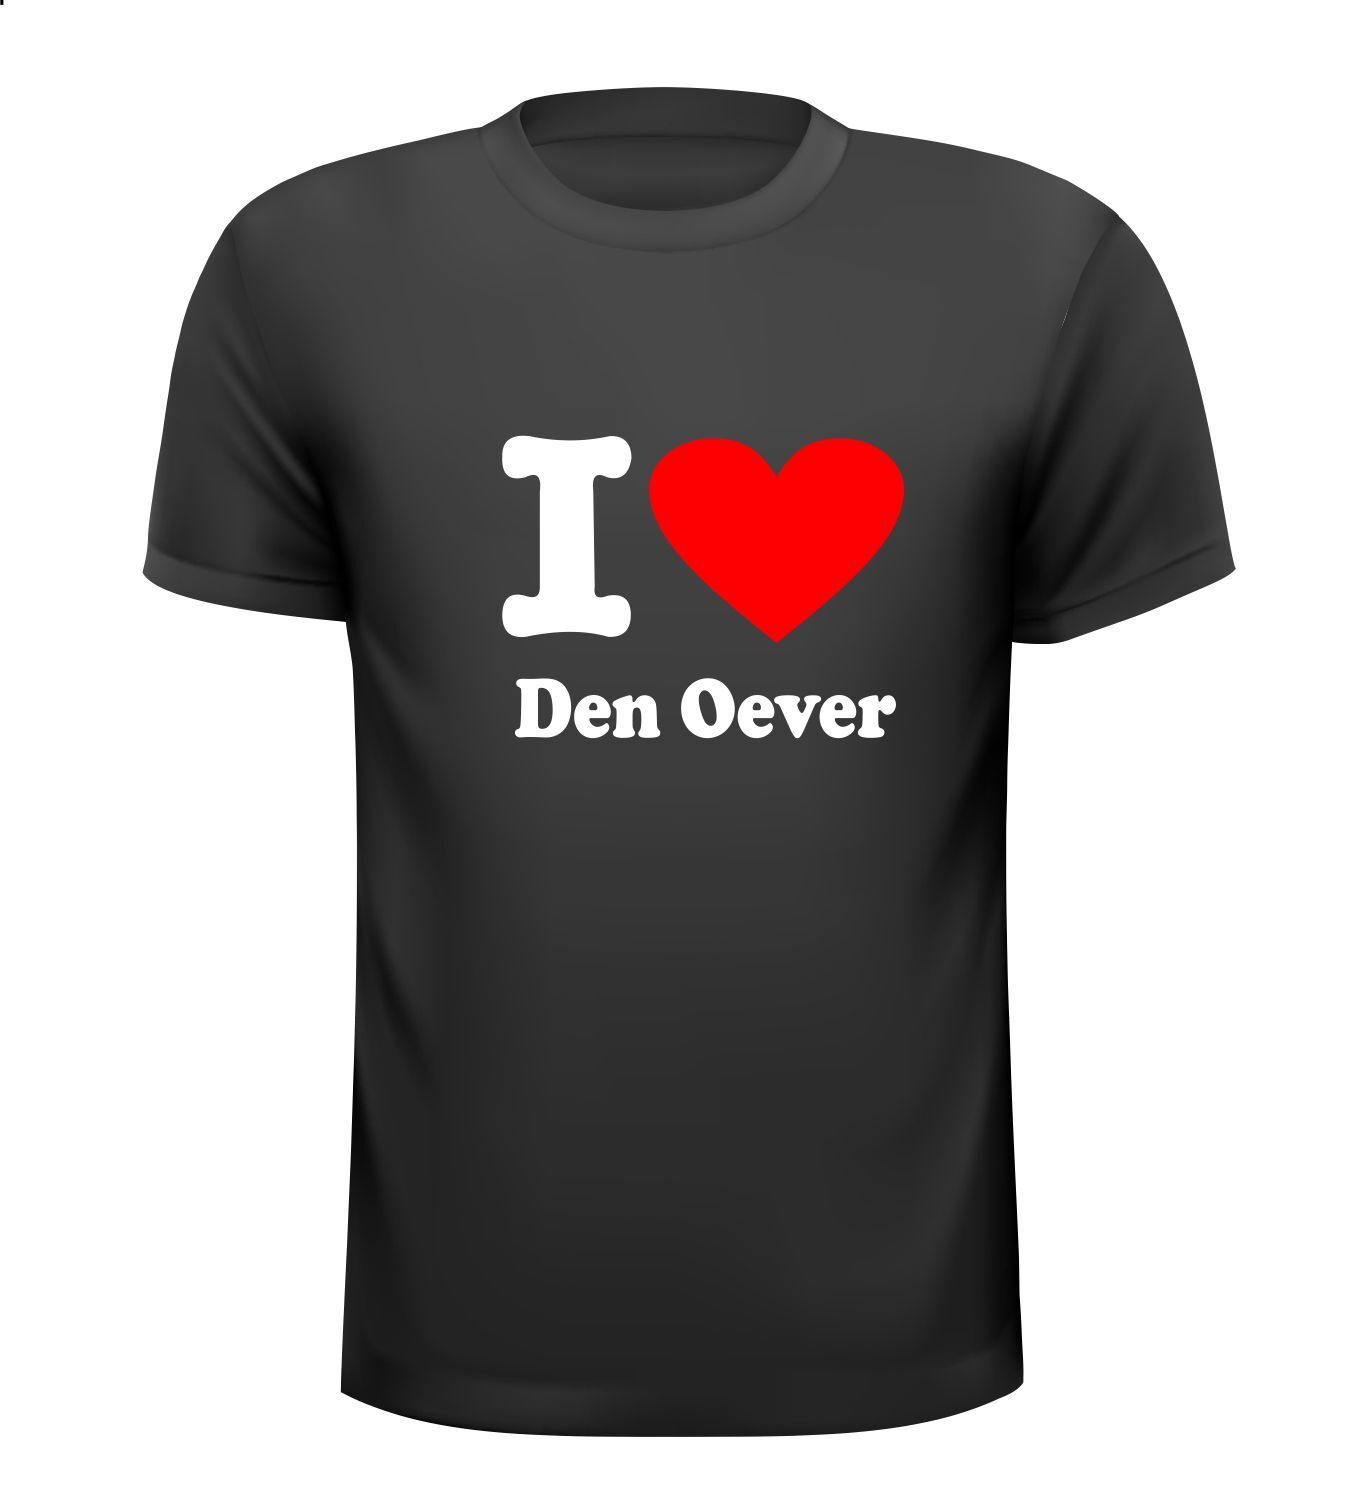 i love Den Oever T-shirt houden van dorpje Den Oever